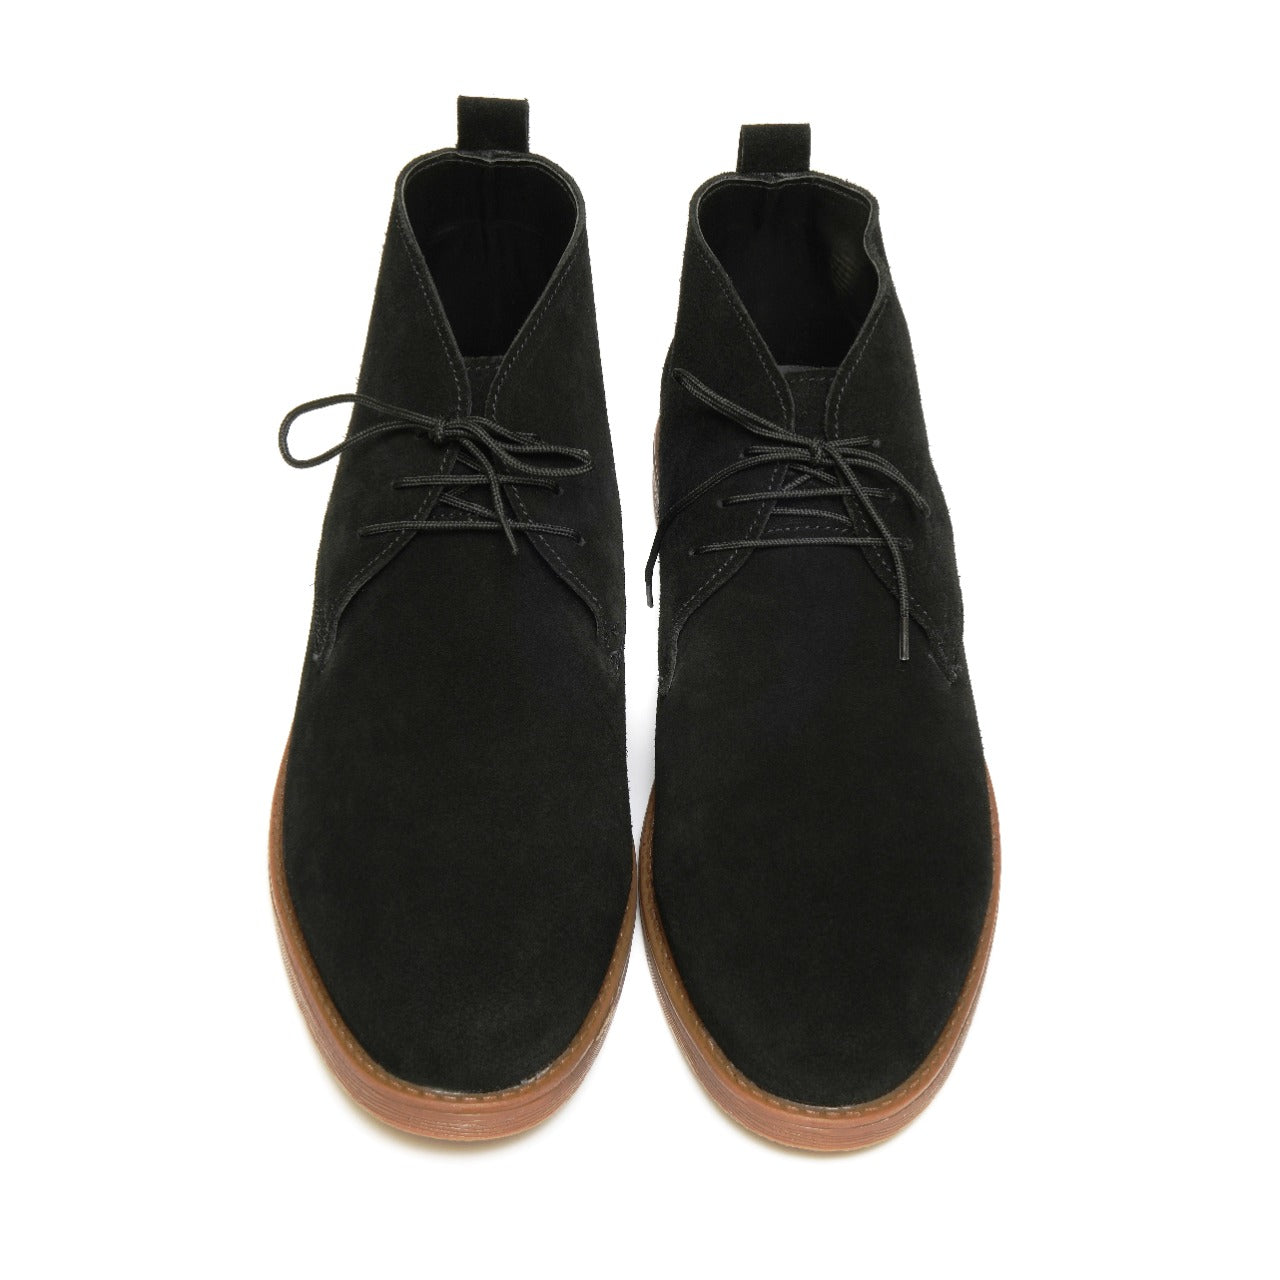 SKU: 1002- Black Suede Shoes